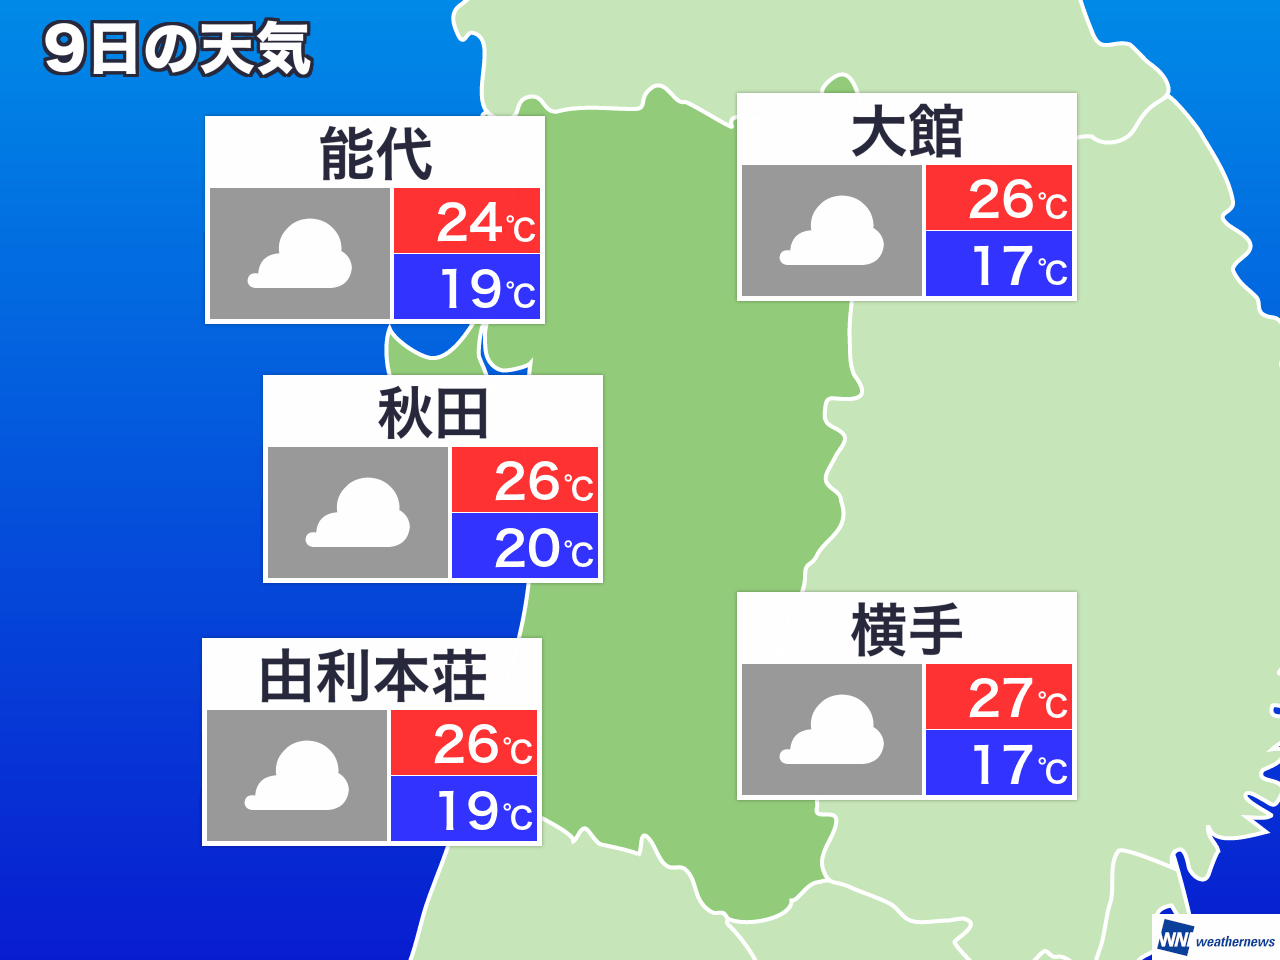 5月24日 日 秋田県の今日の天気 ウェザーニュース